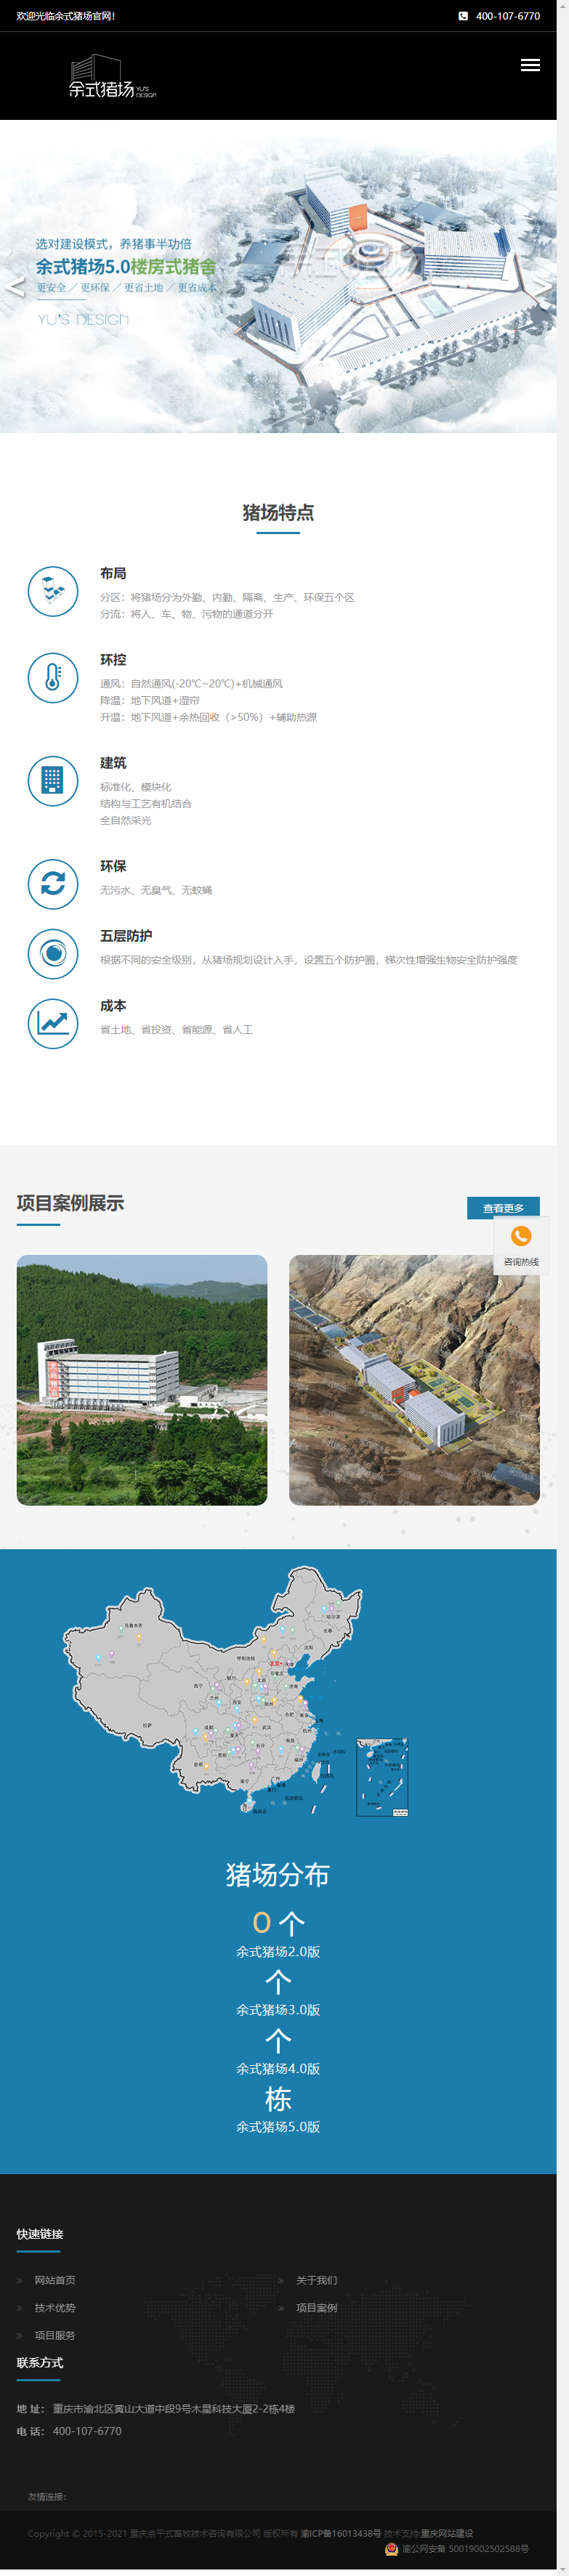 重庆余平式畜牧技术咨询有限公司网站案例